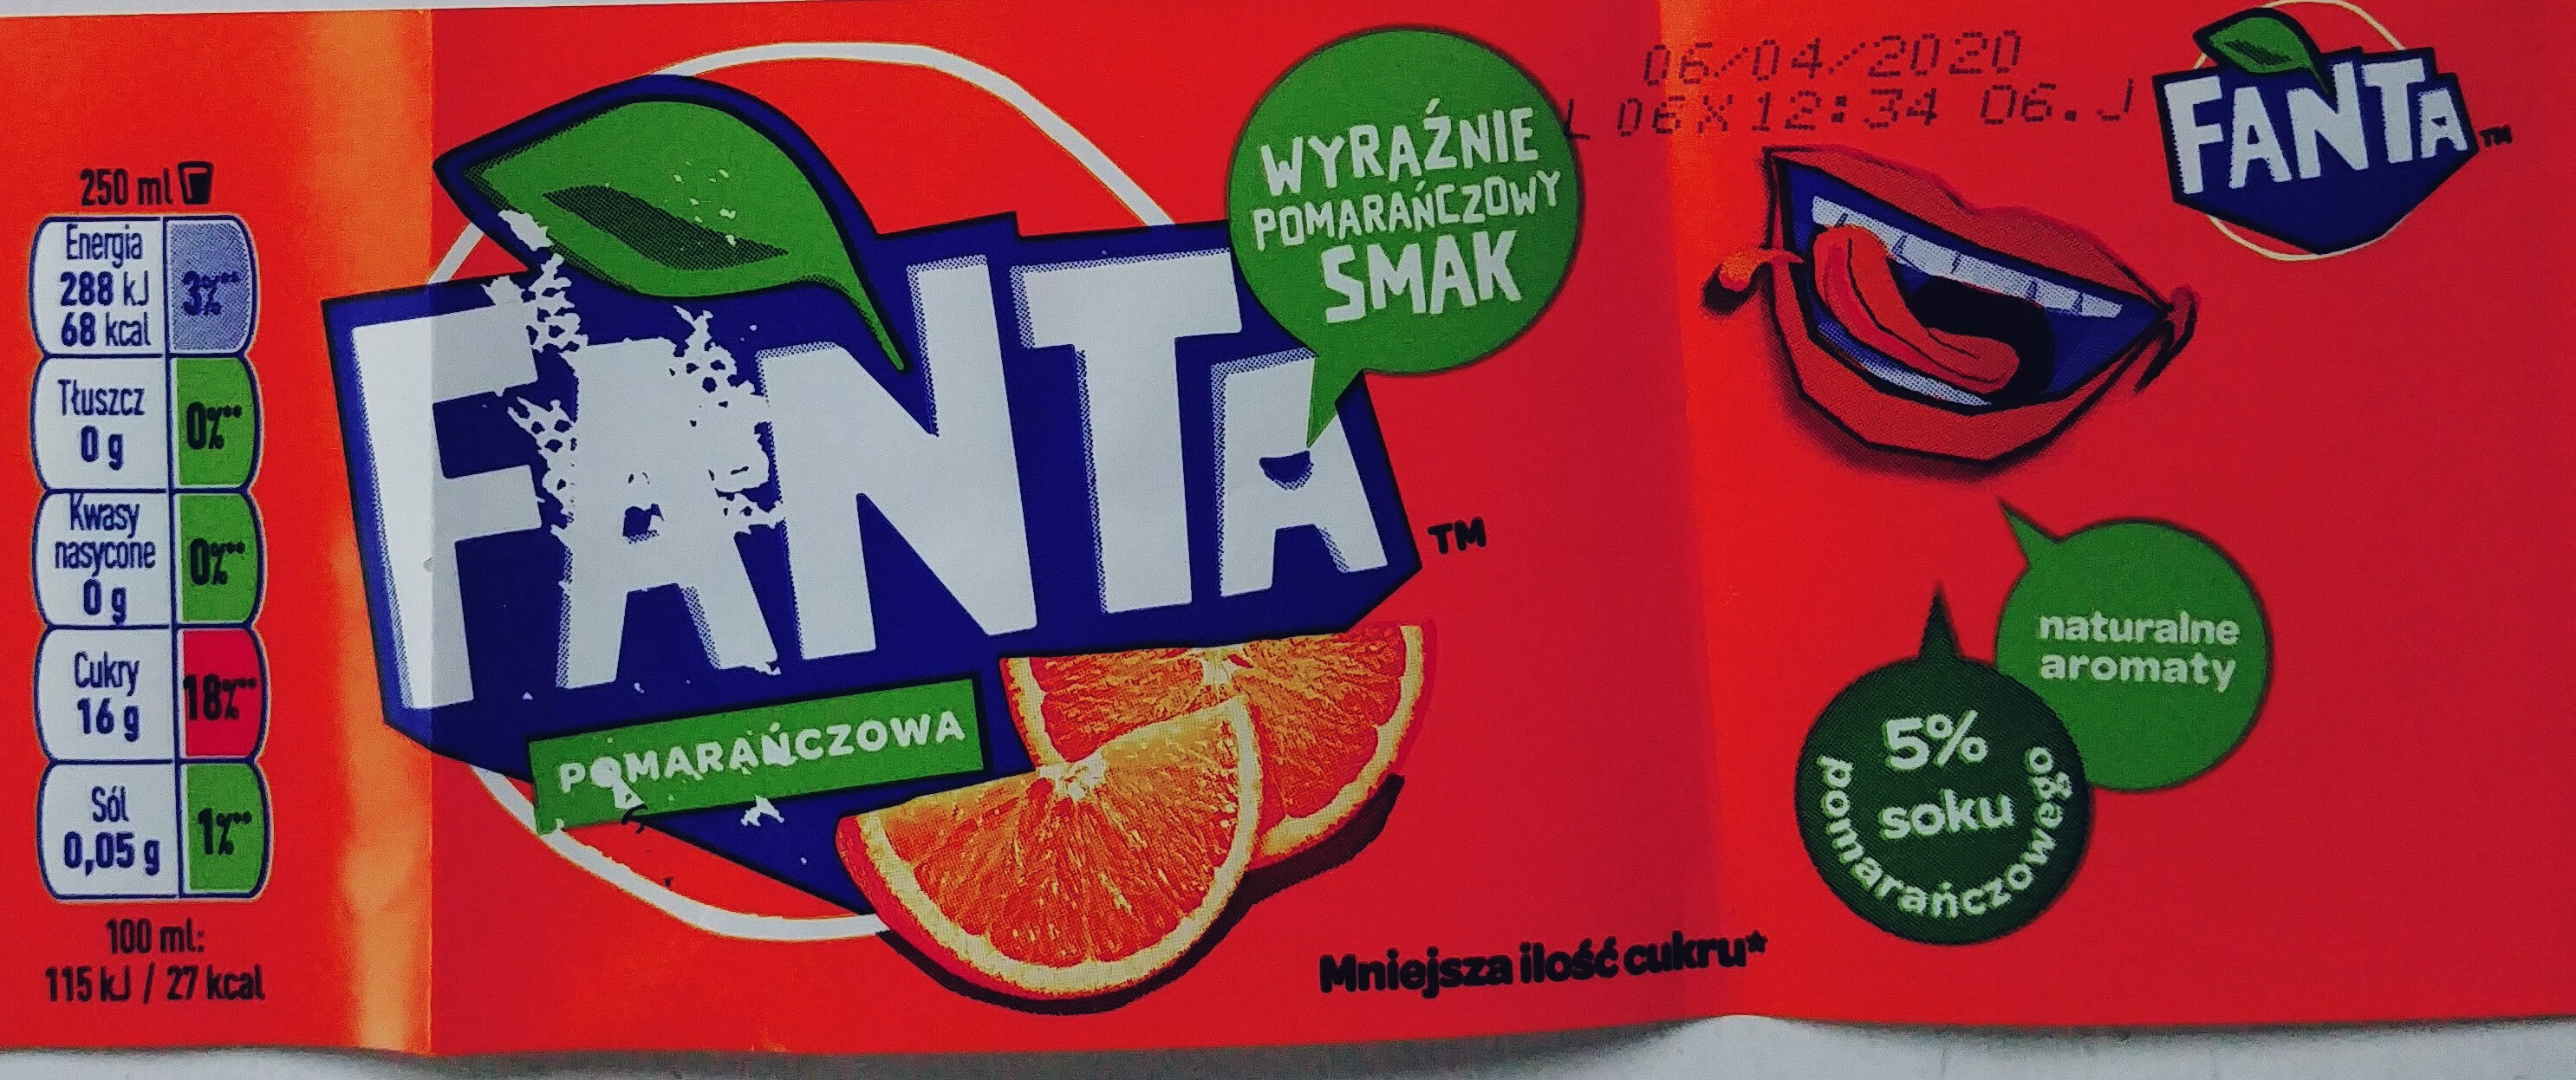 Fanta Pomarańczowa 0.85 - Product - pl